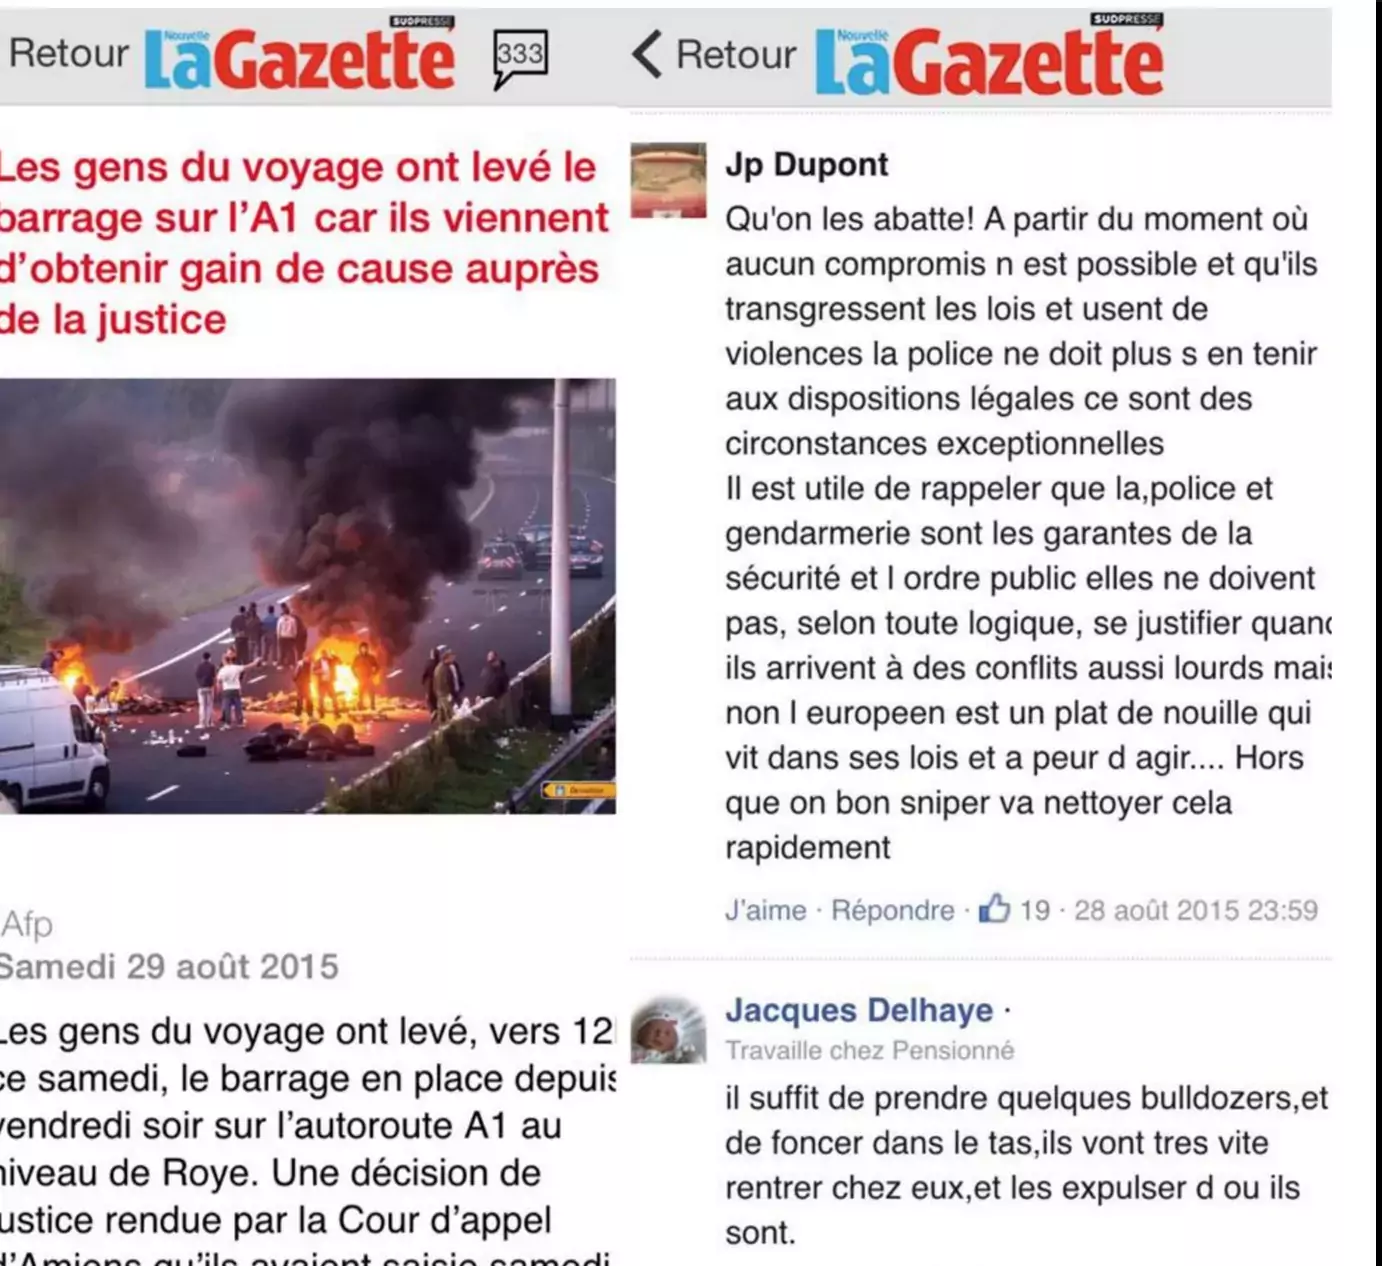 Appel à des agressions criminelles motivés par la haine des Roms par Jp Dupont et Jacques Delhaye sur La Gazette